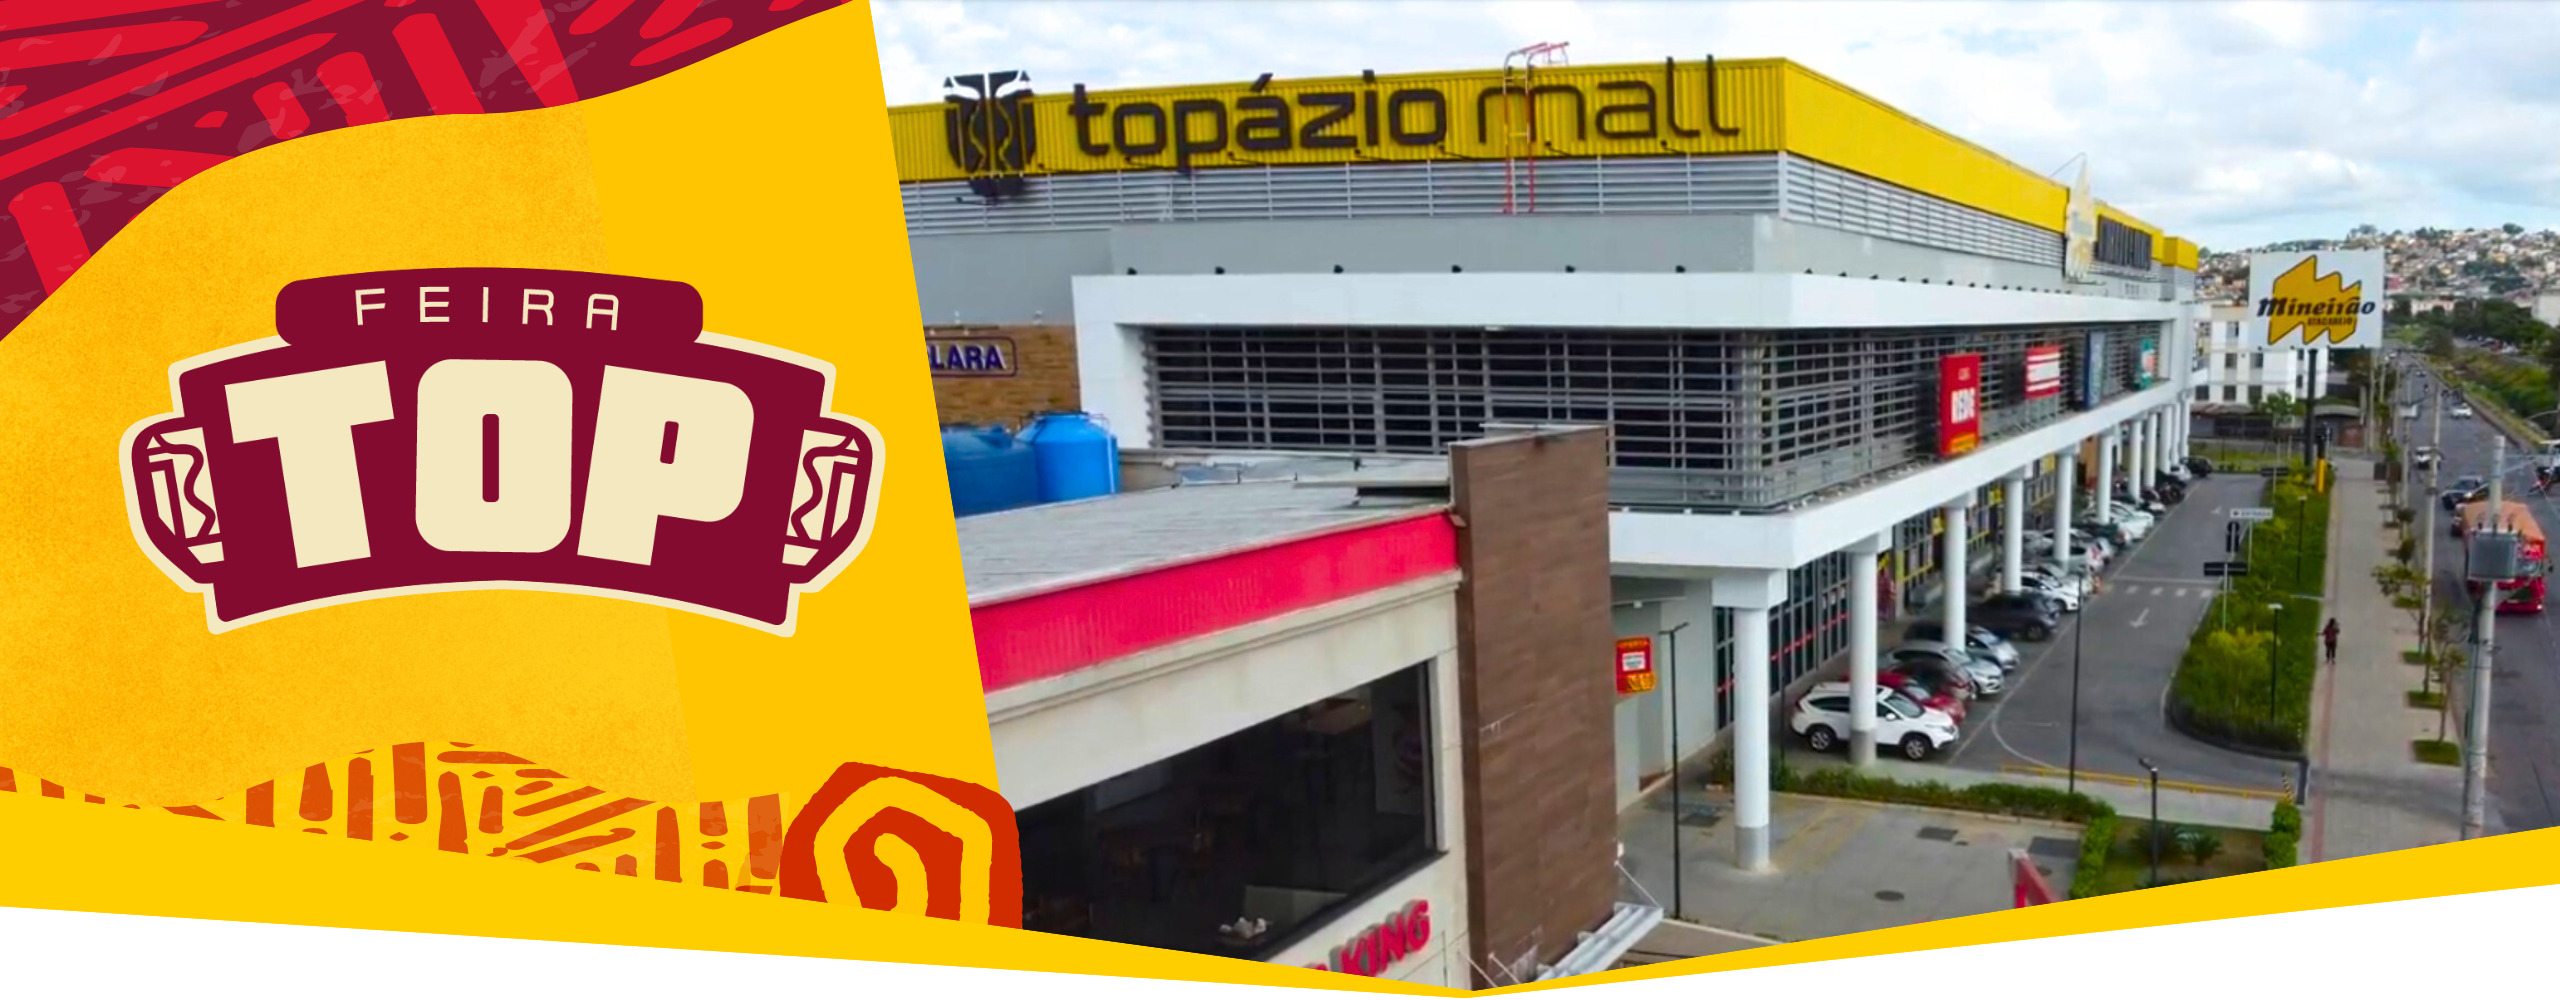 Feira TOP no Topázio Mall